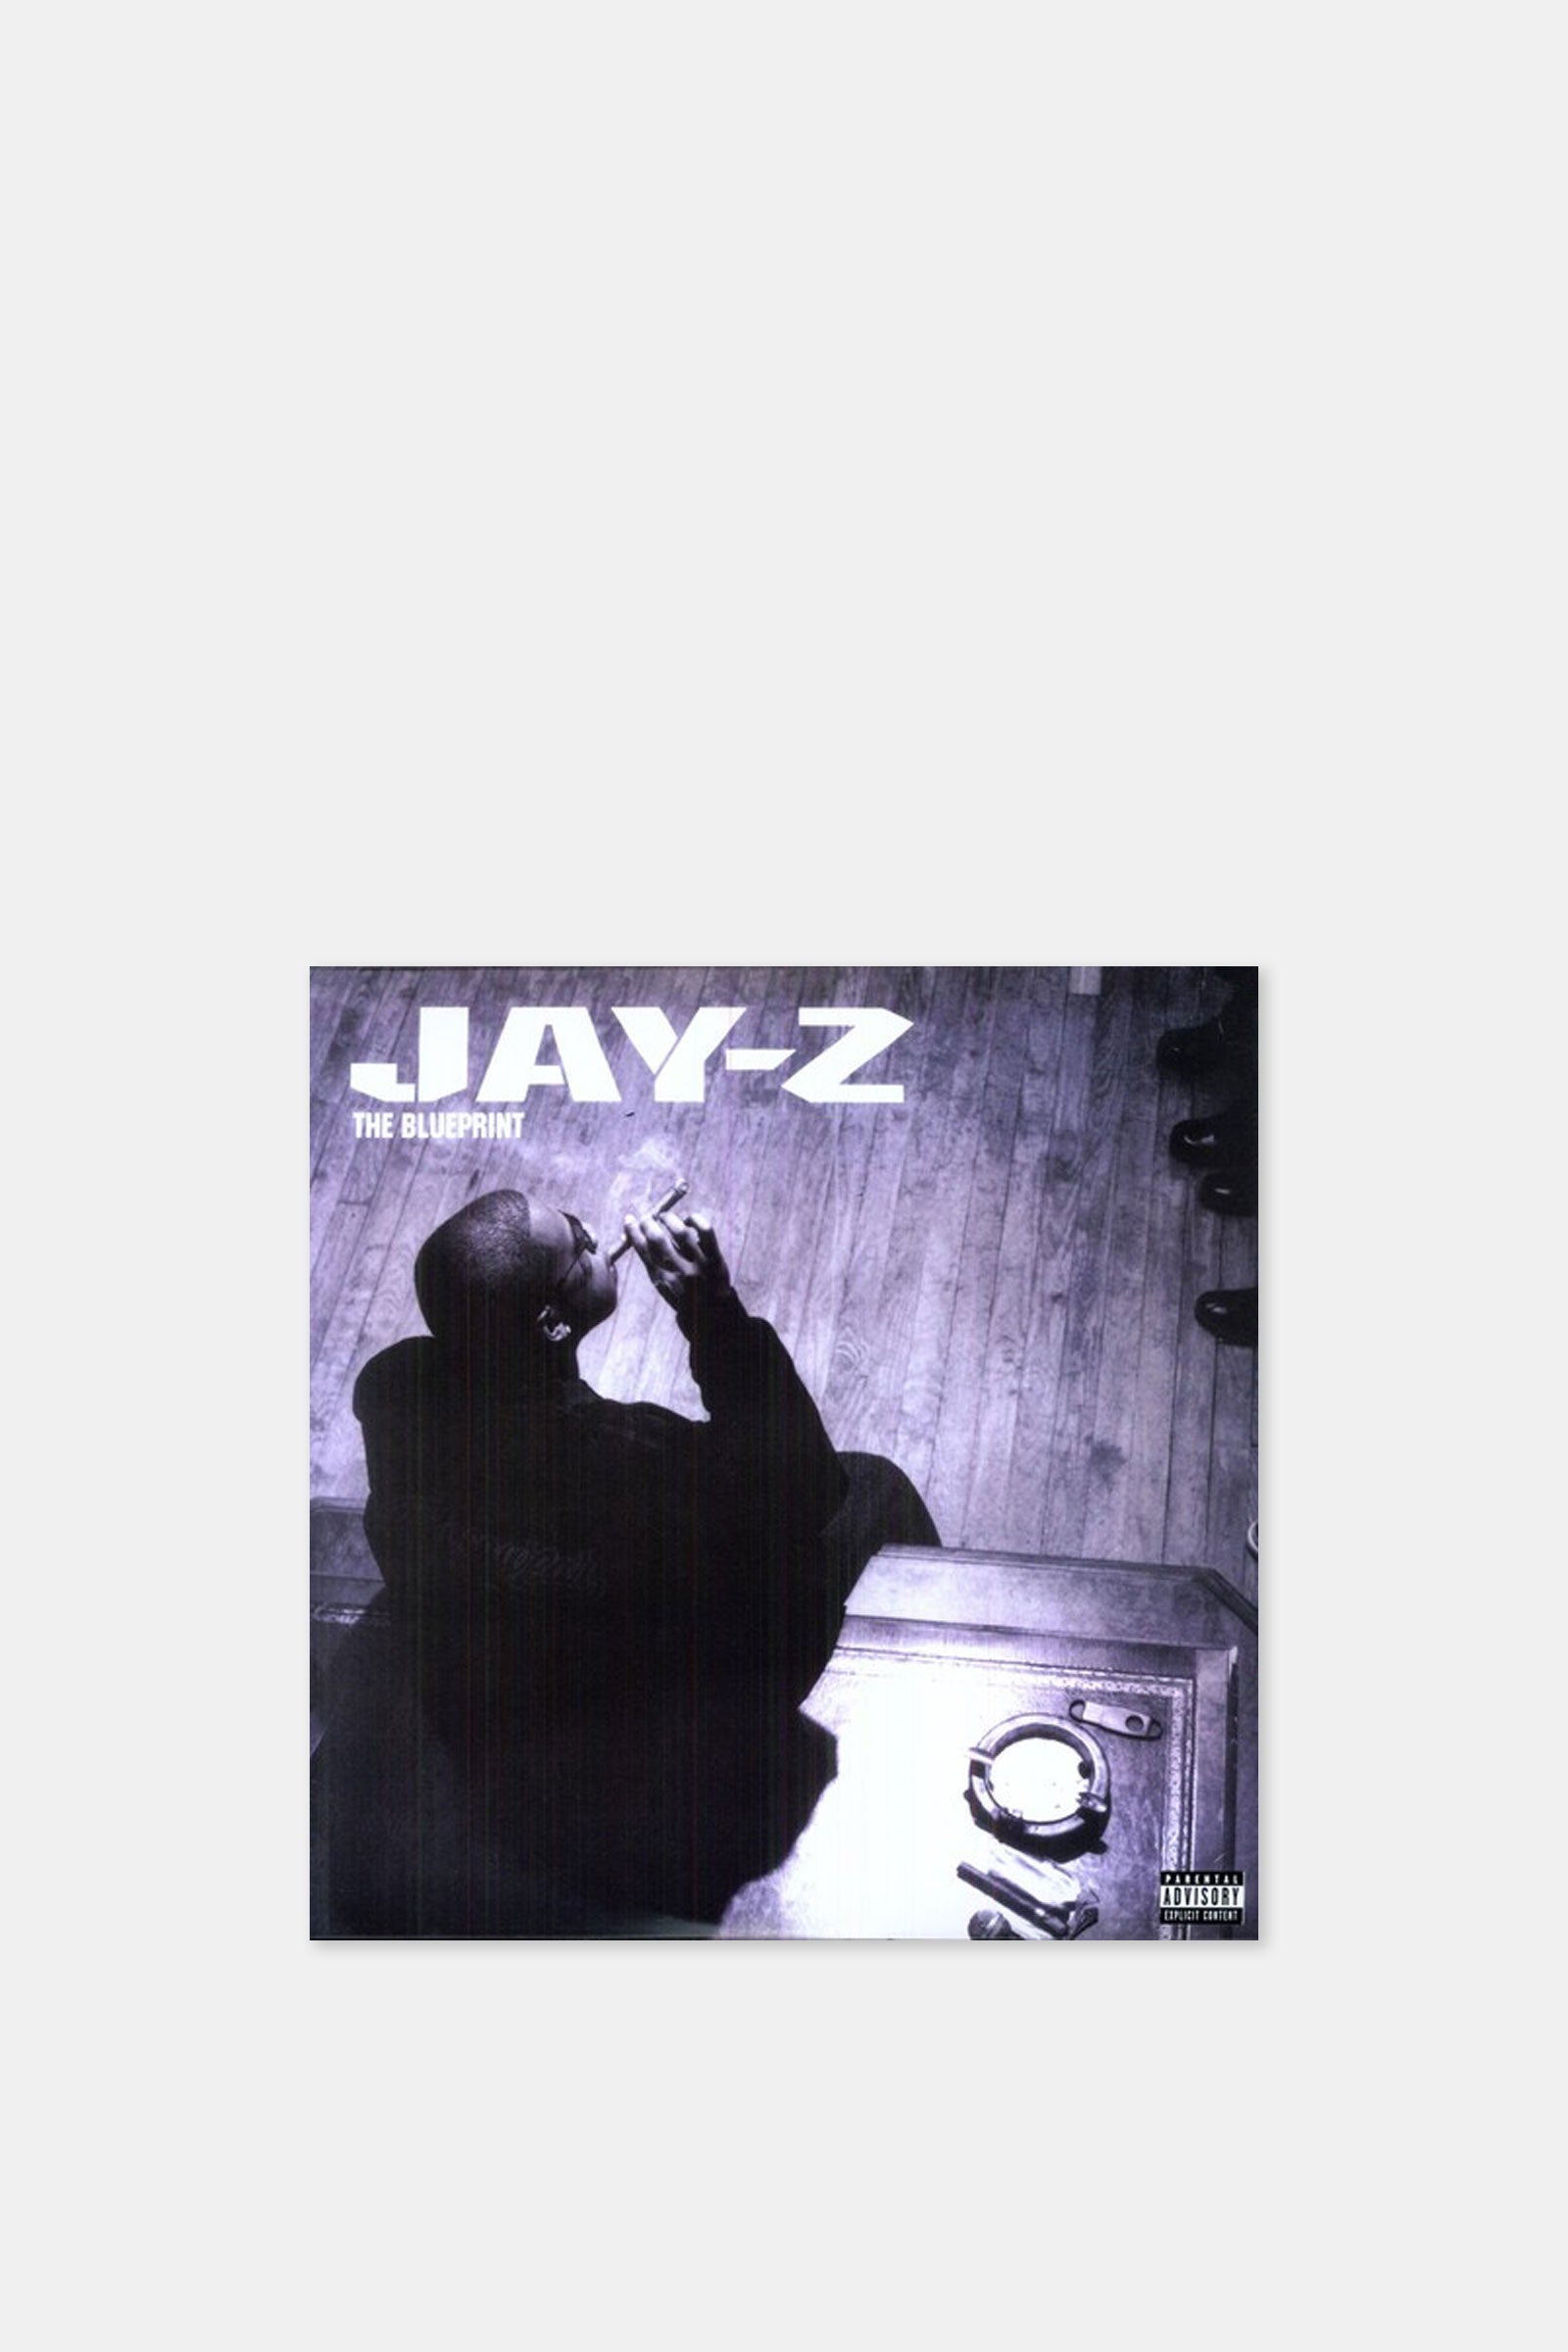 Jay-Z - Blueprint